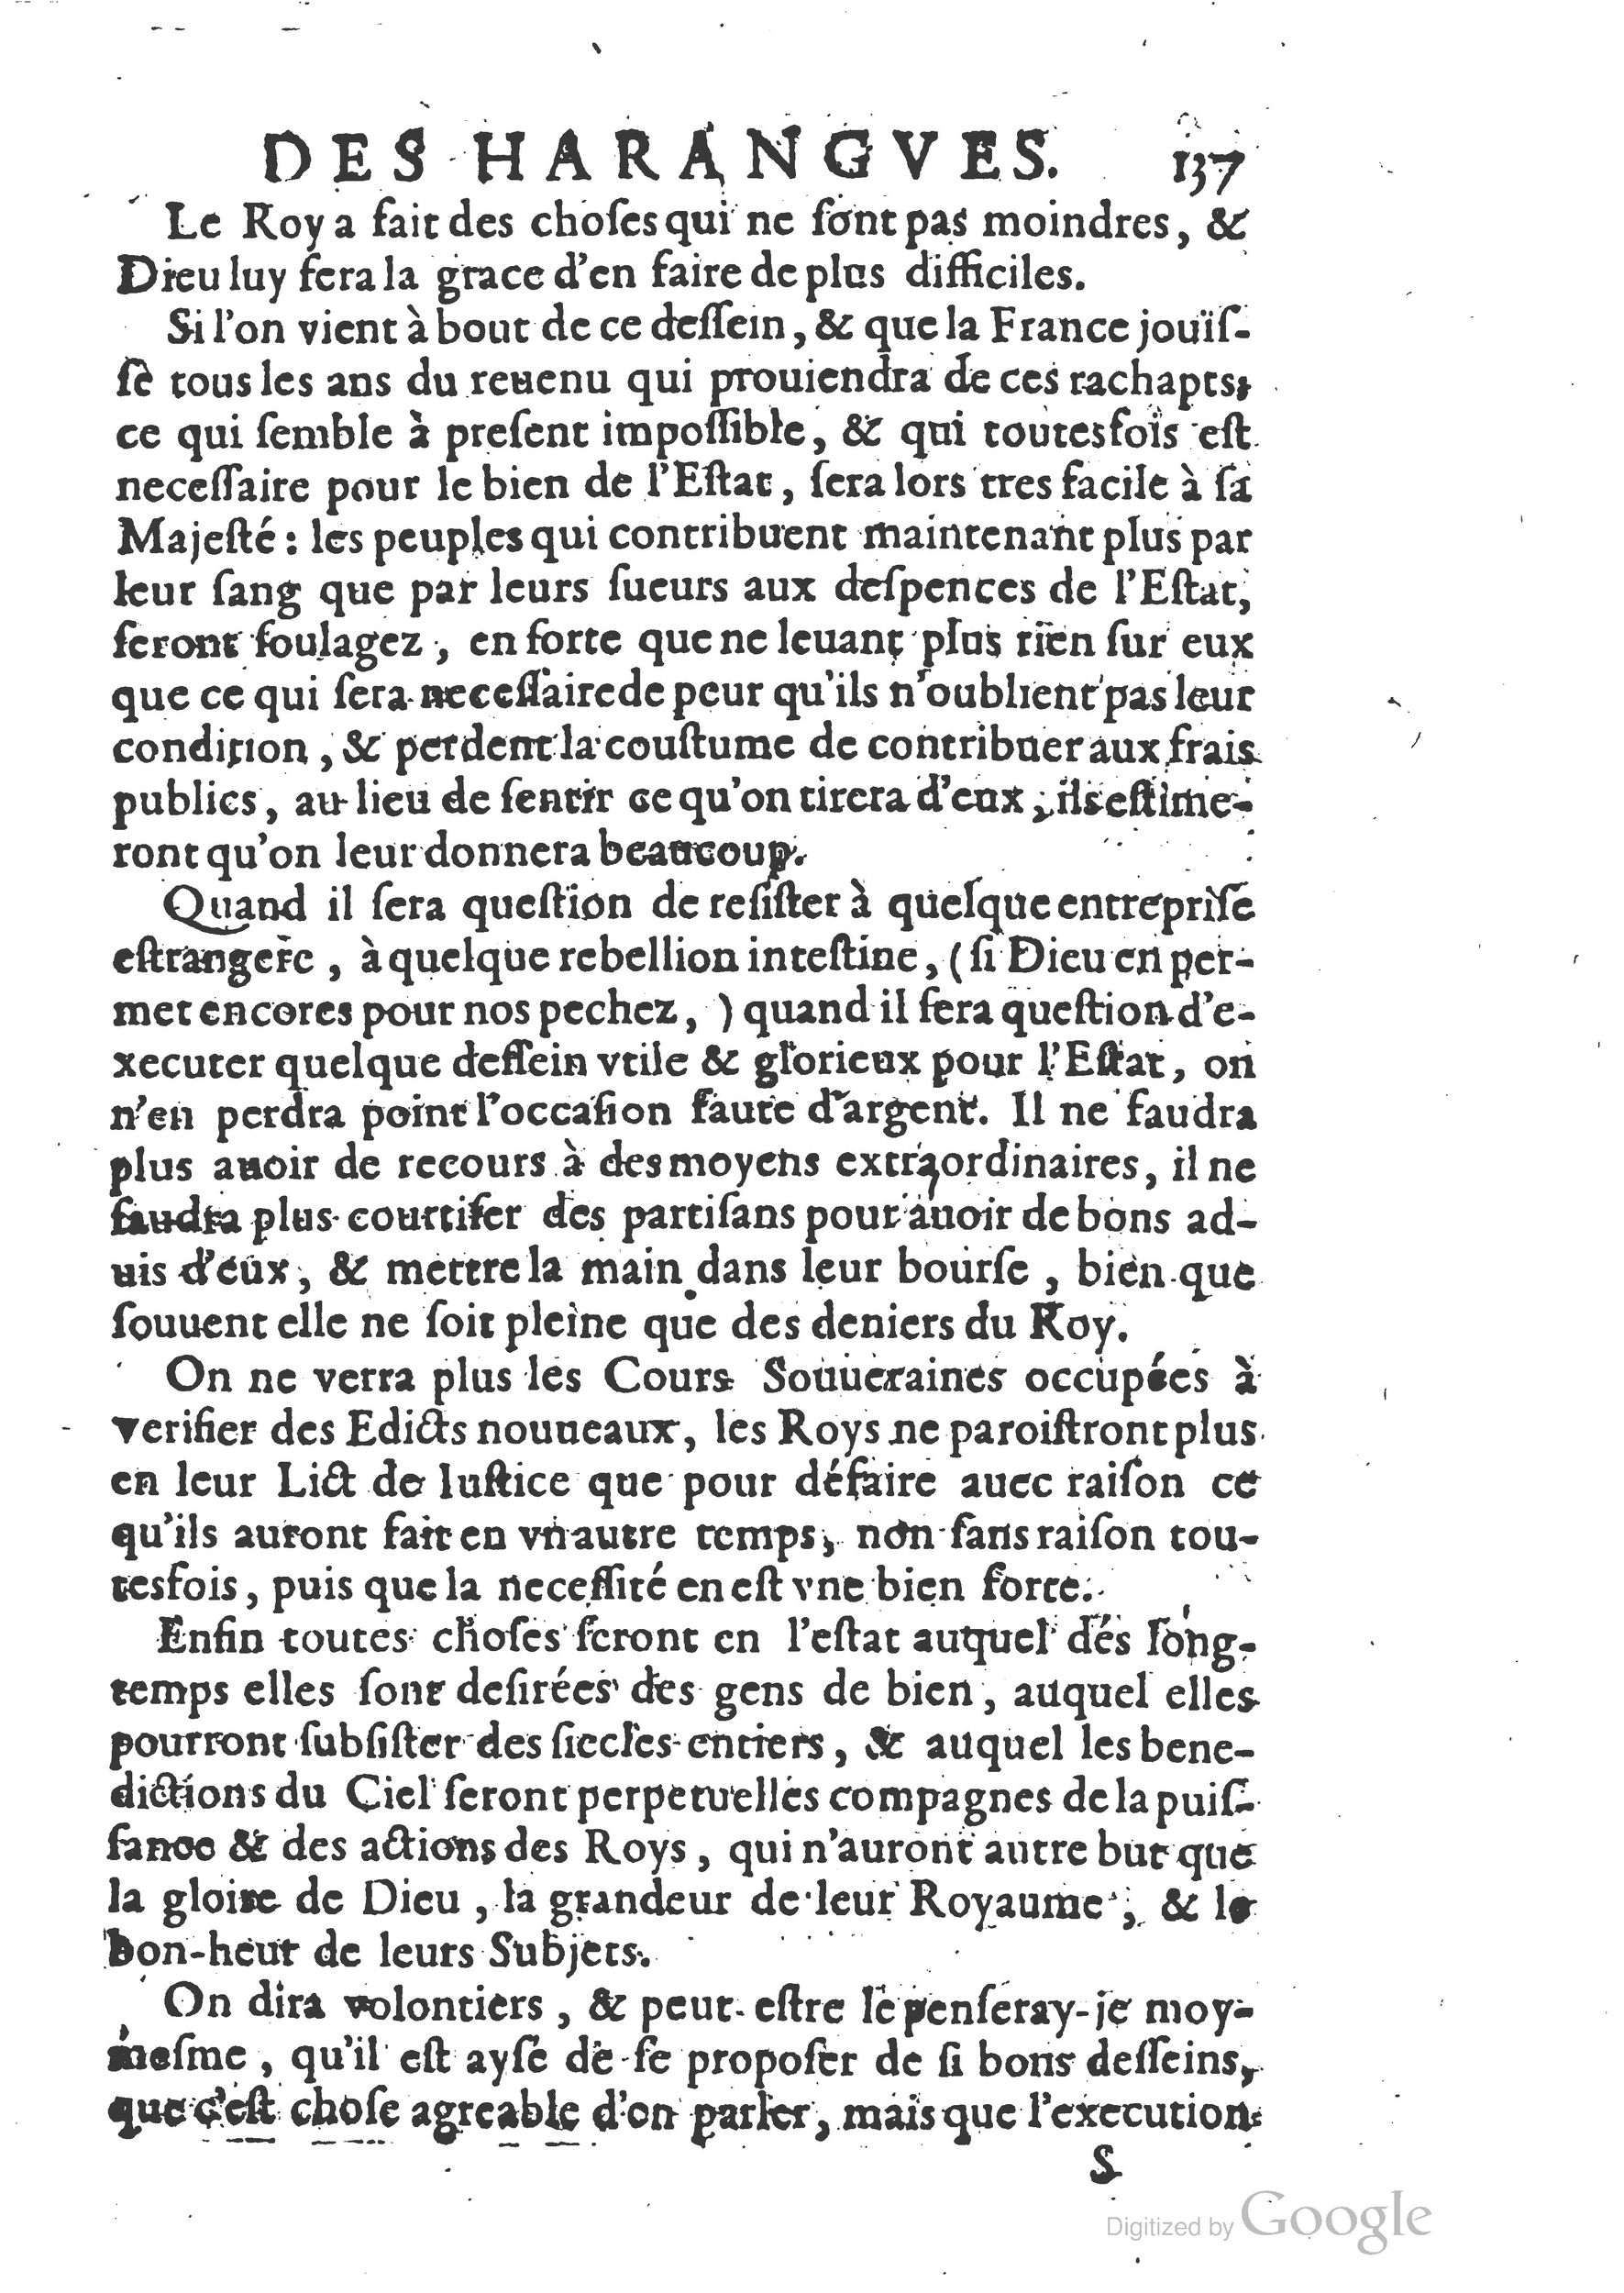 1654 Trésor des harangues, remontrances et oraisons funèbres Robin_BM Lyon_Page_156.jpg